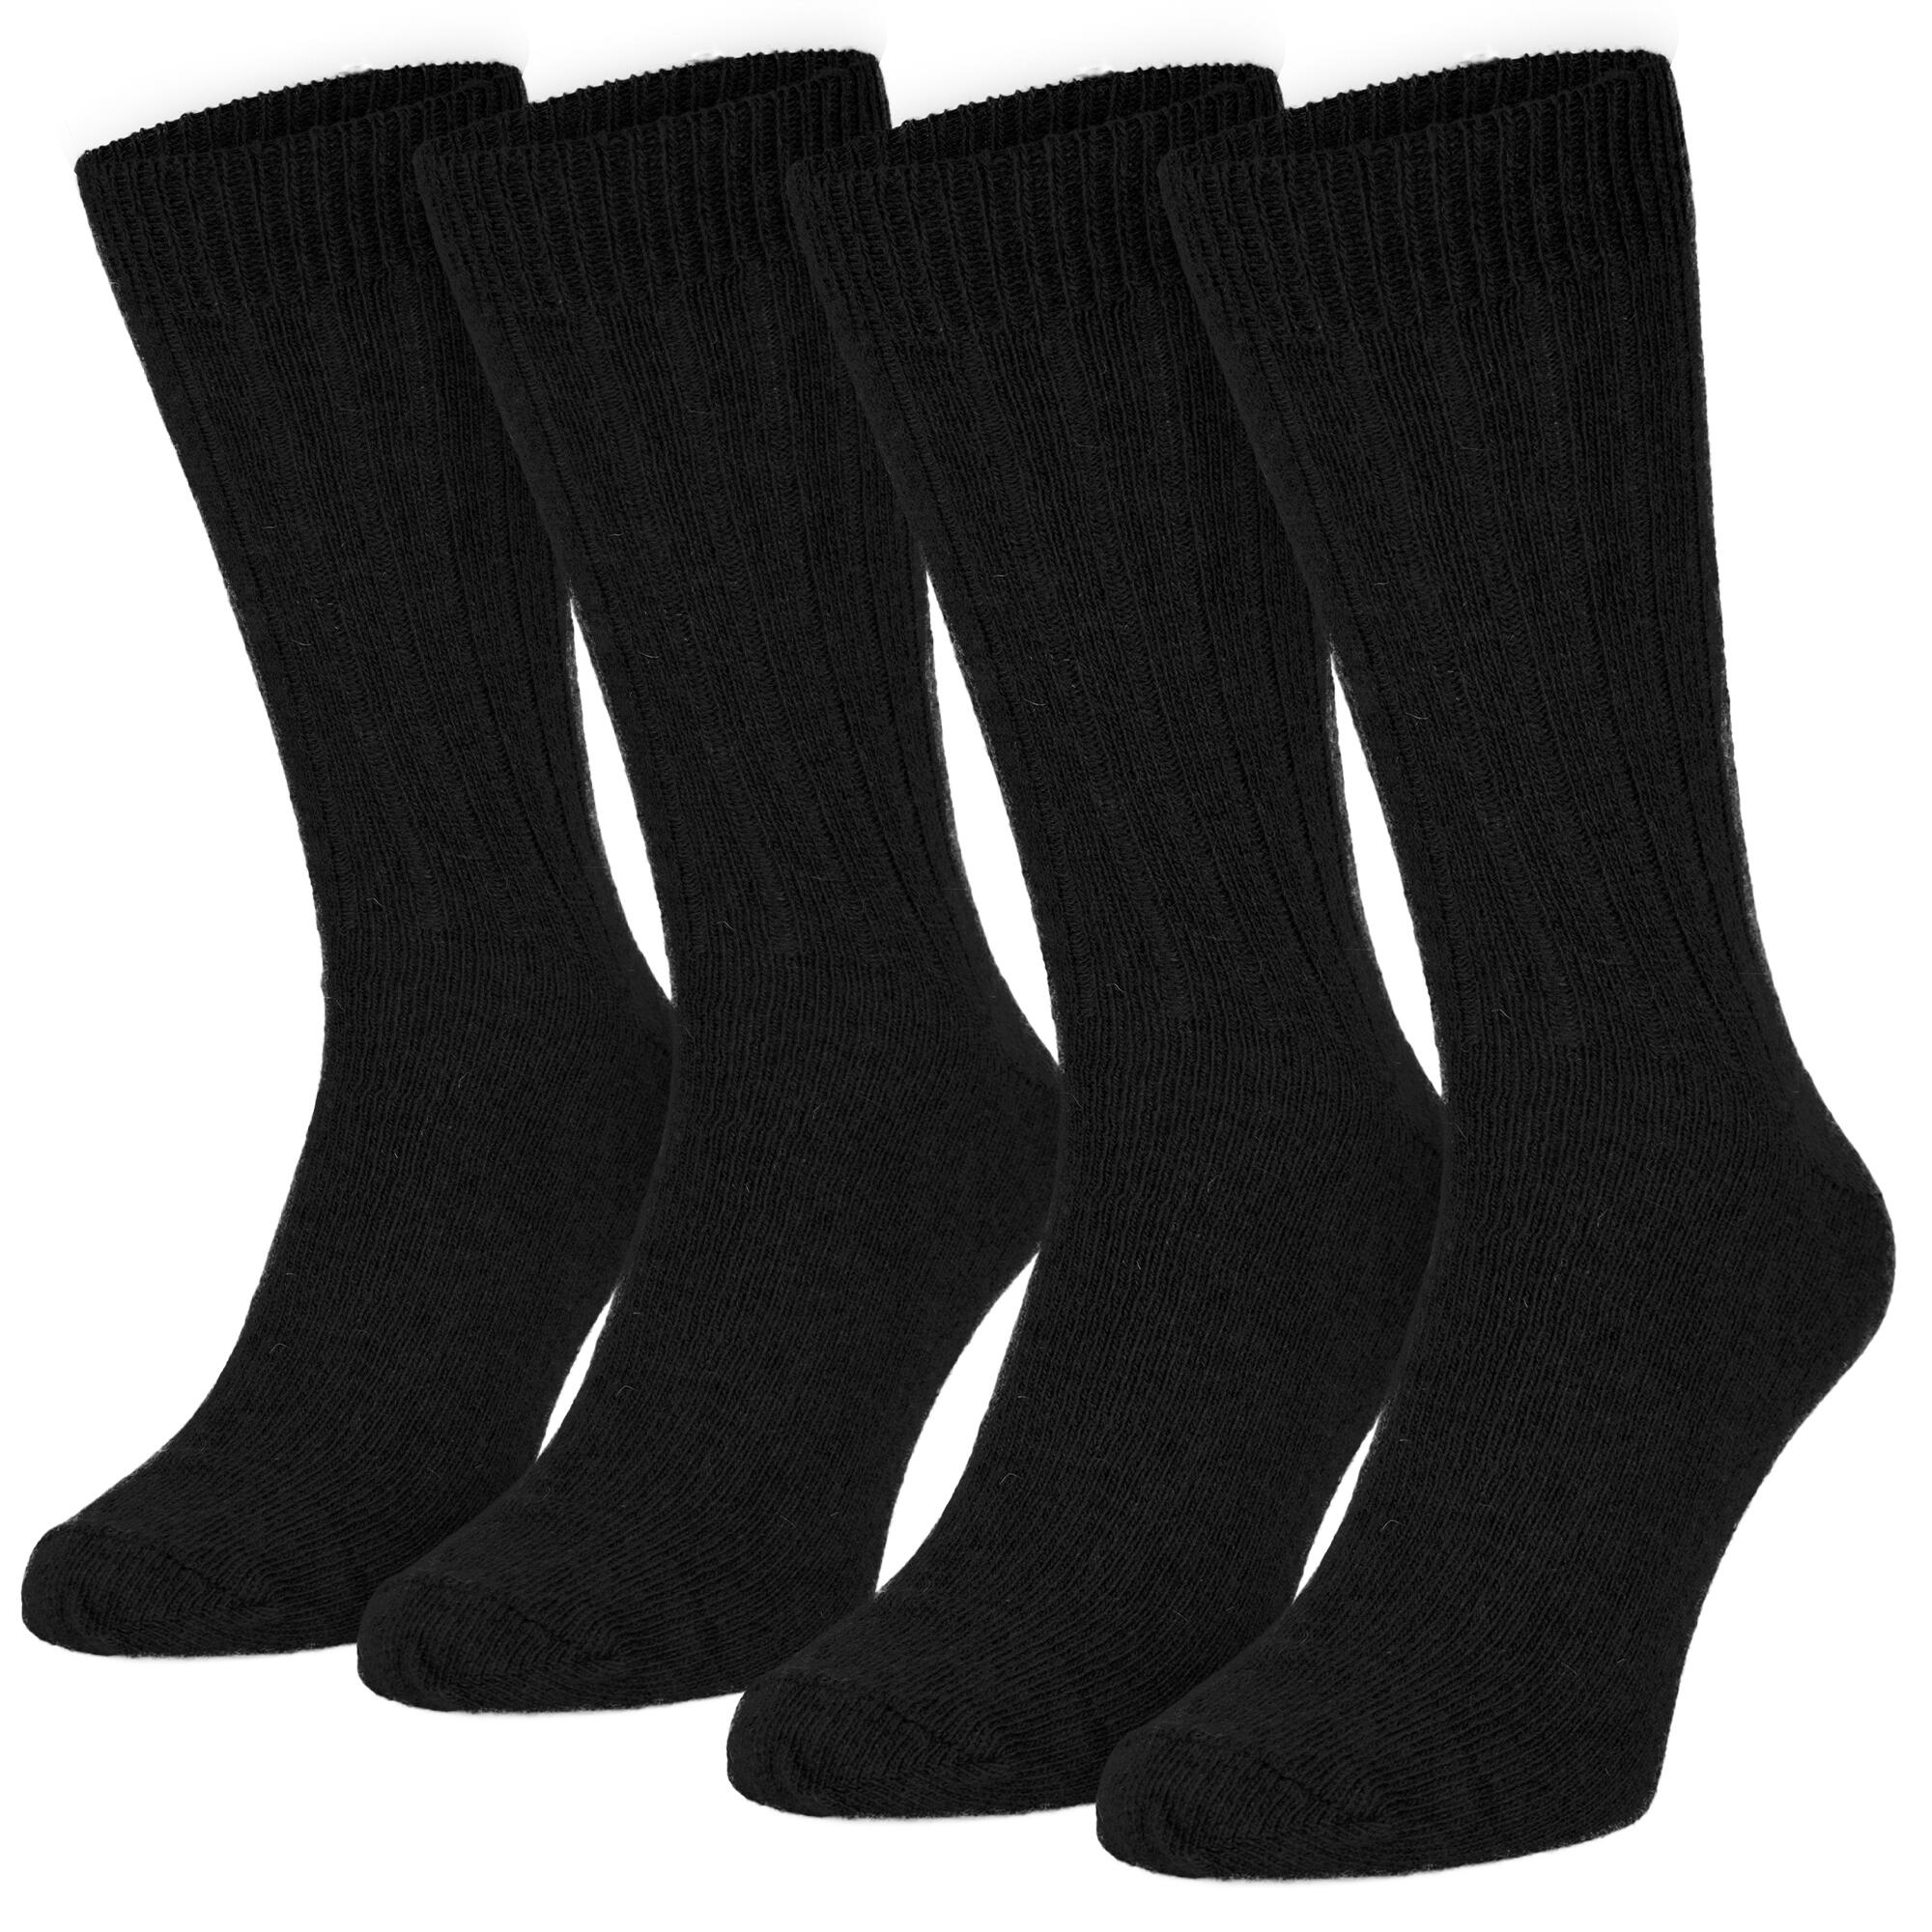 Siete calcetines térmicos o polares de  y El Corte Inglés que son la  solución para no pasar frío en los pies con las botas